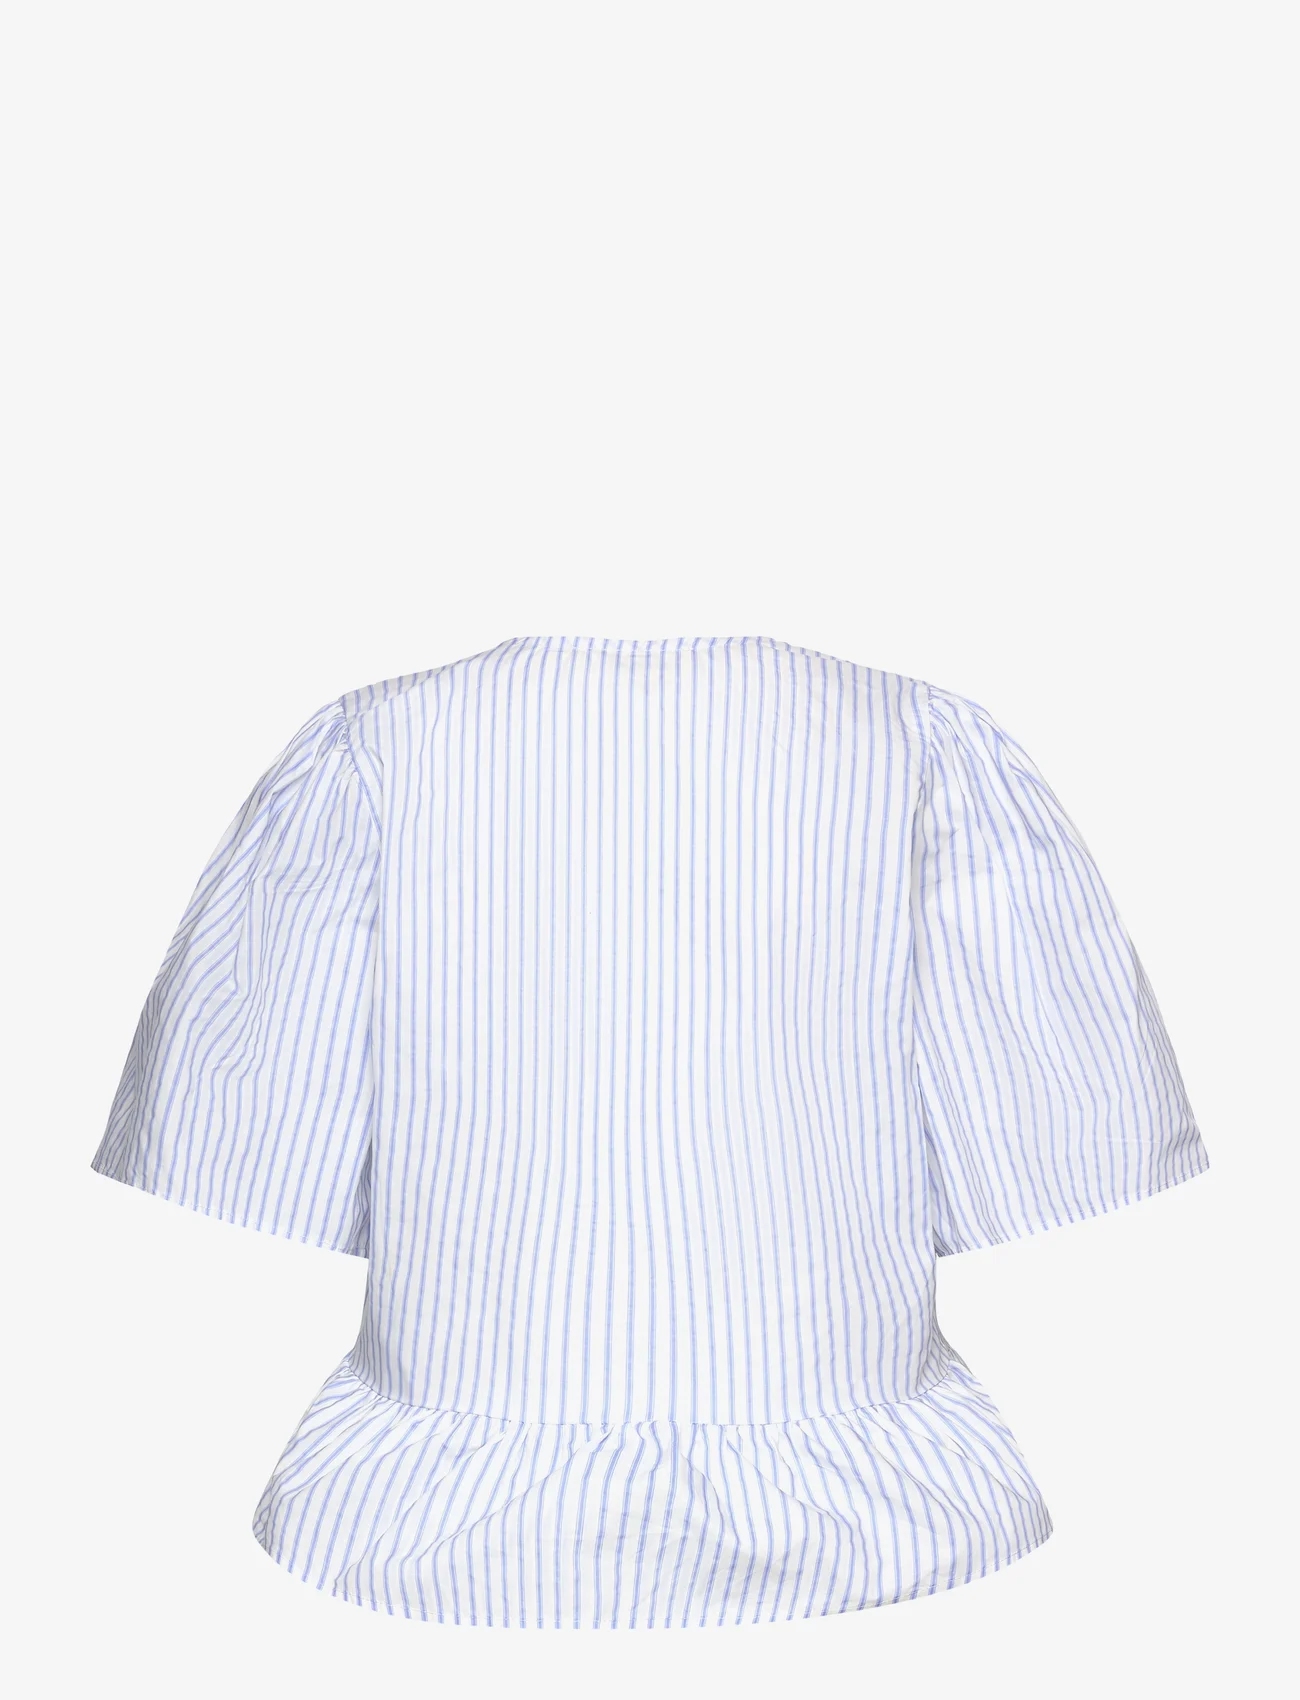 Sofie Schnoor - Shirt - kortærmede bluser - light blue striped - 1